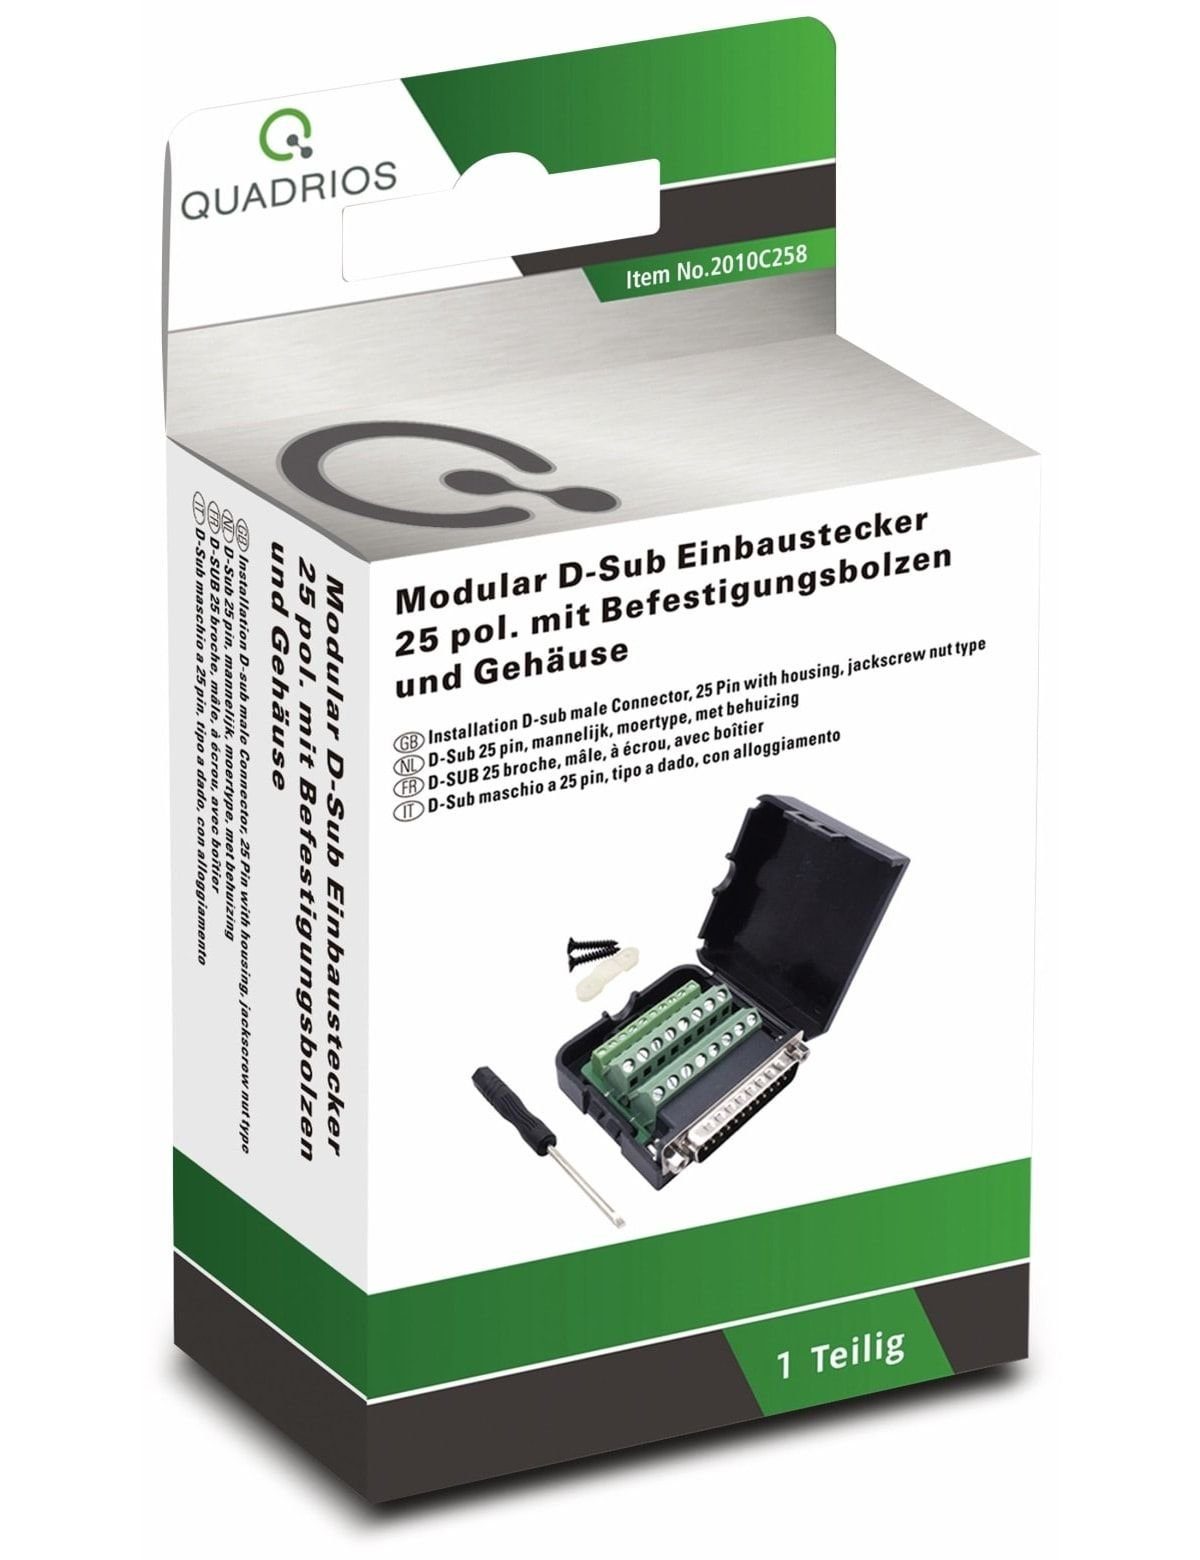 Quadrios Klemmen QUADRIOS, 2010C258, USB-Modular-Set, D-Sub